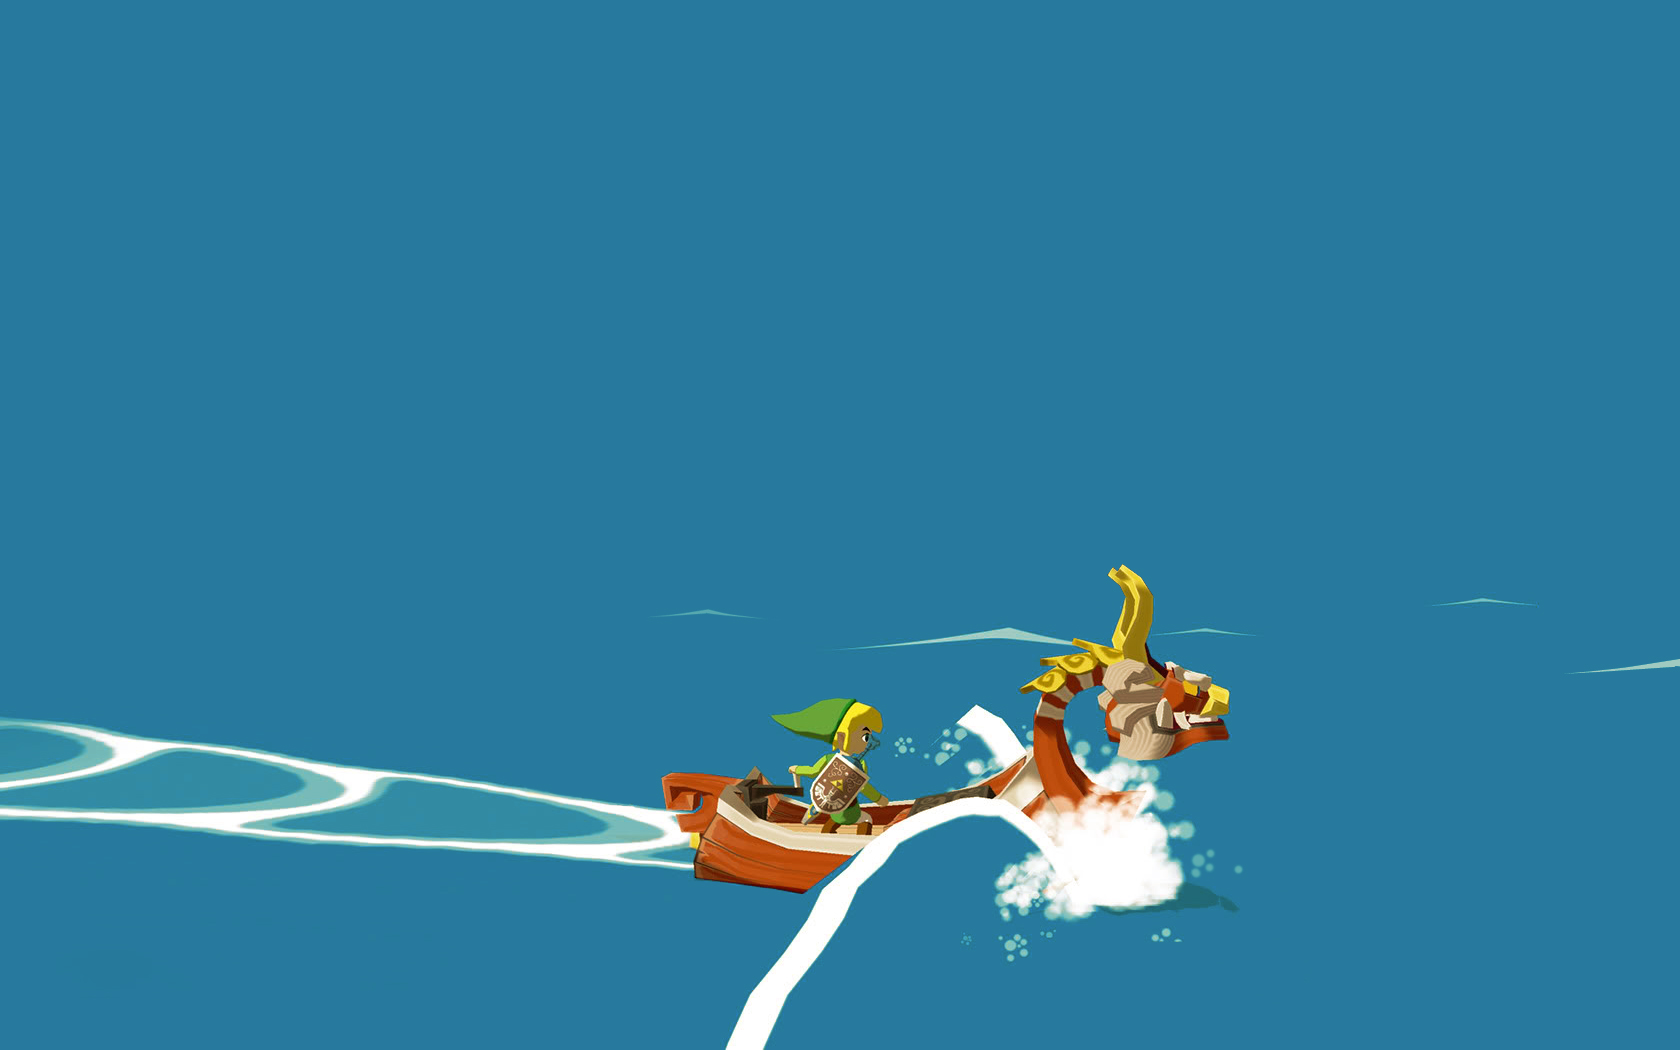 1001 Videojuegos que debes jugar: The Legend of Zelda - The Wind Waker 5